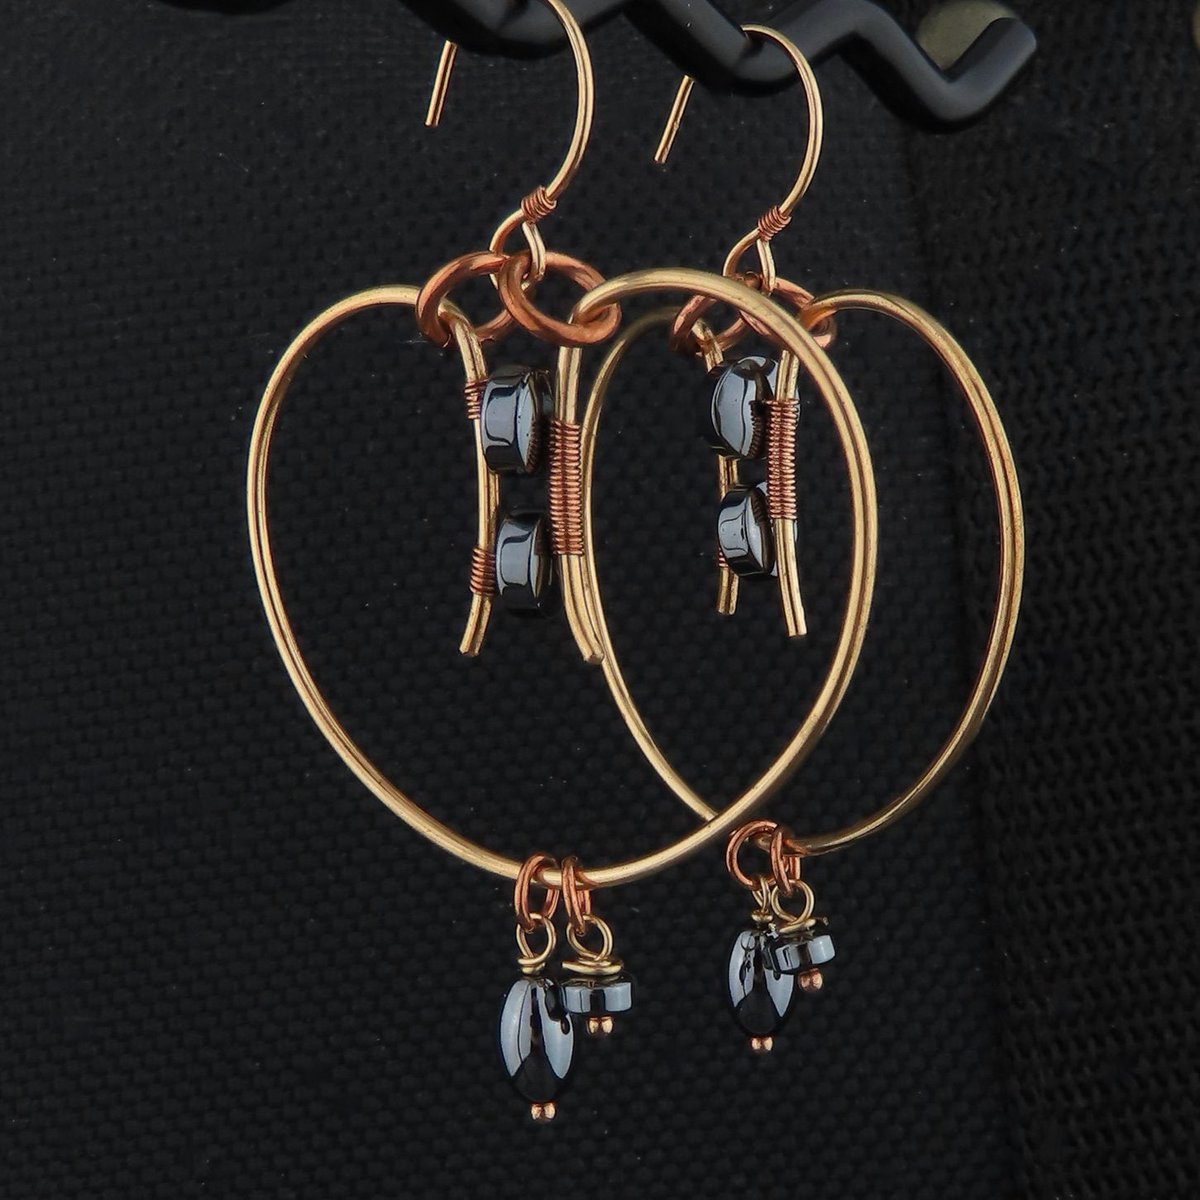 Bronze Copper Gray Hematite Big Hoop Earrings etsy.me/46msLNC #bronzeearrings #hoopearrings #bigjewelry #grayjewelry #hematiteearrings #graystonejewelry #hippiechic #buyonetsy #handmadeearrings #wireearrings #friendgift